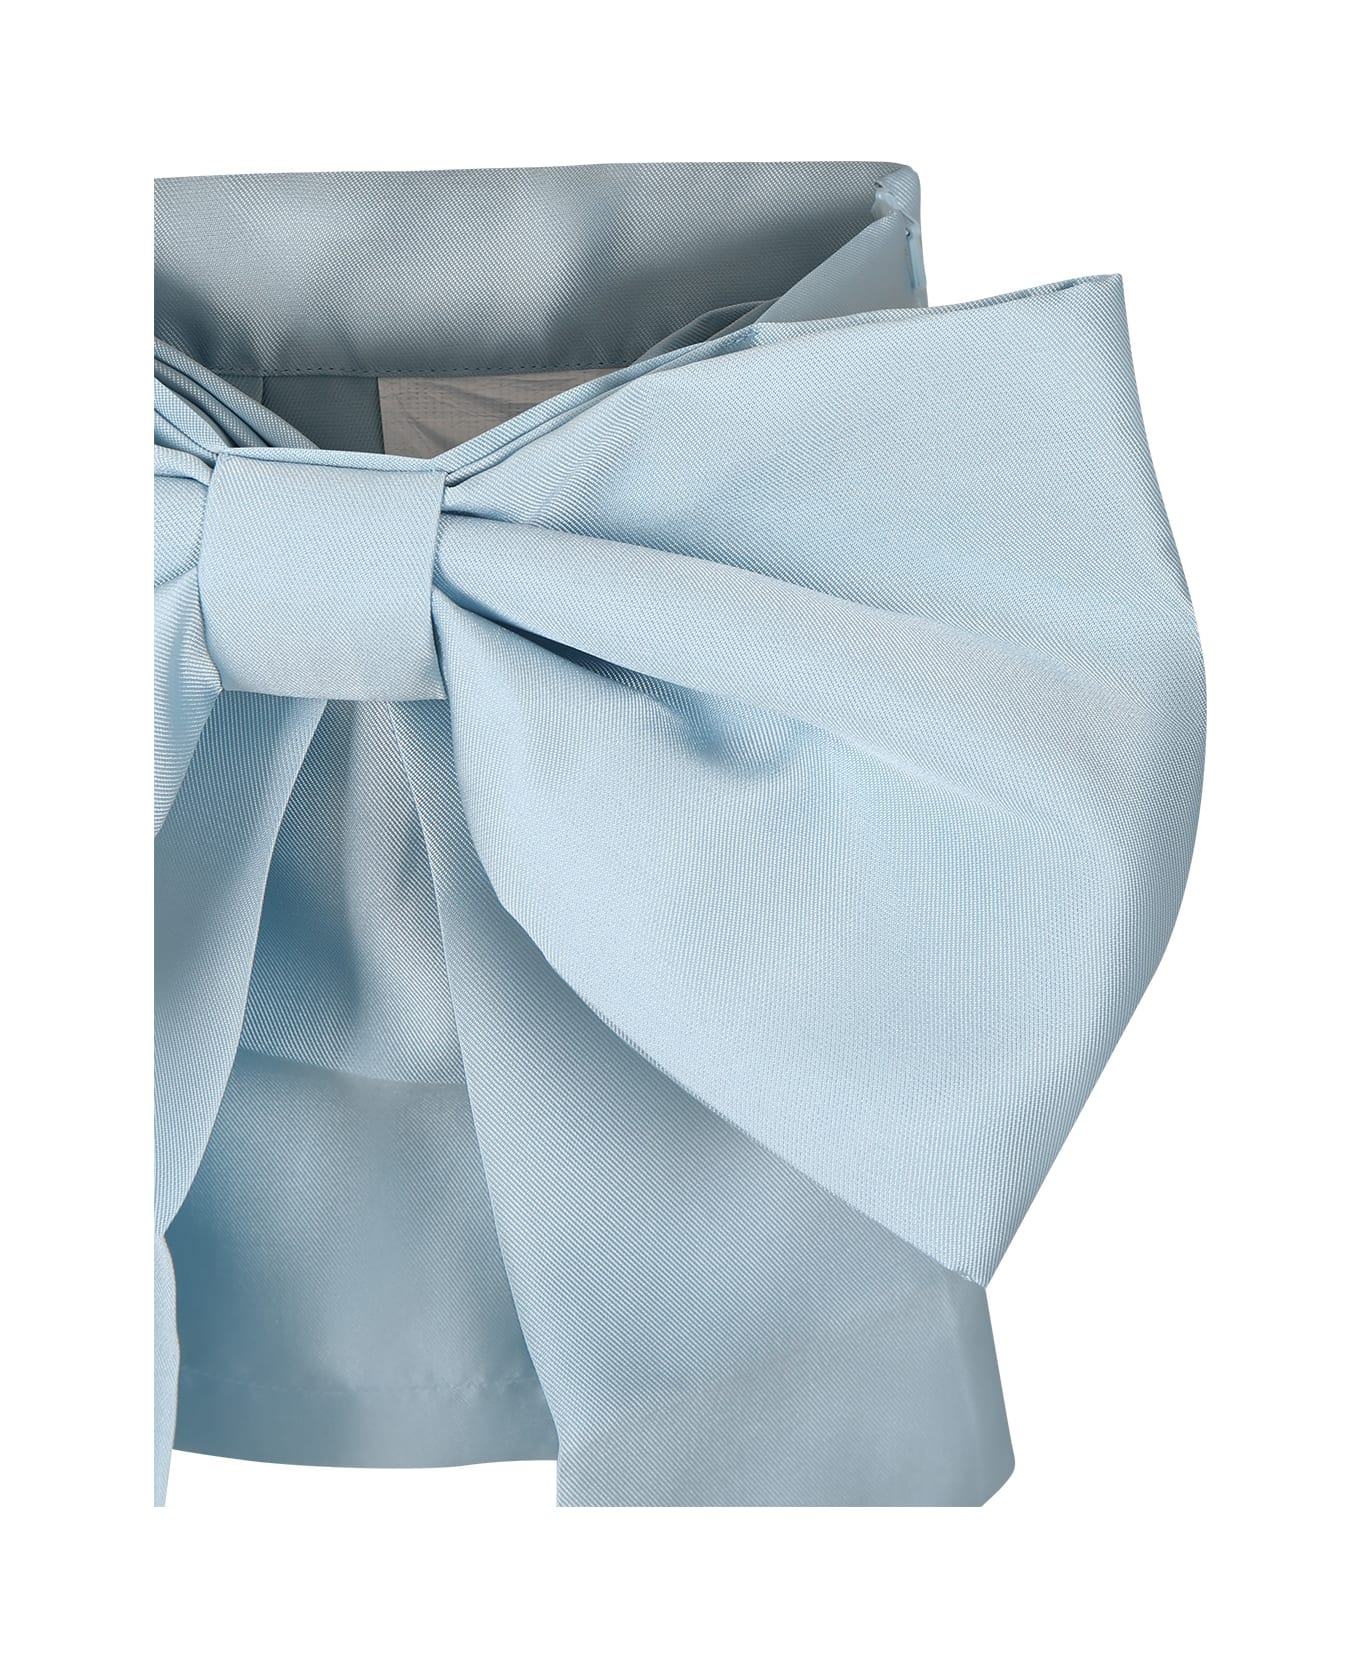 Caroline Bosmans Light Blue Skirt For Girl With Bow - Light Blue